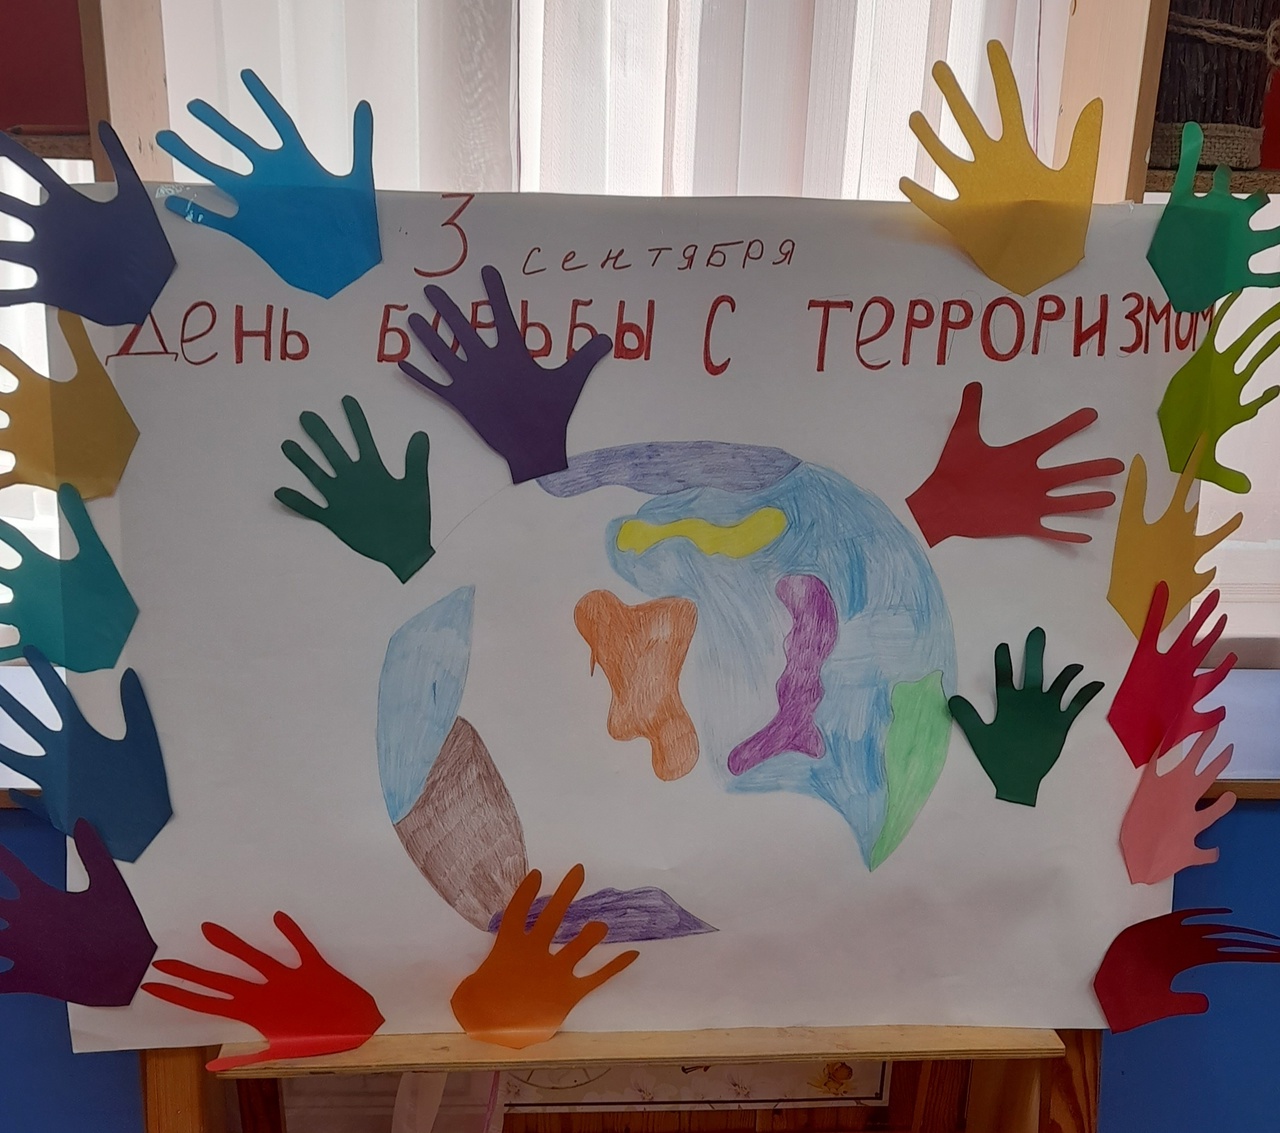 В МБДОУ &quot;Иловский детский сад&quot;  для старших дошкольников прошло мероприятие, посвящённое Дню борьбы с терроризмом.